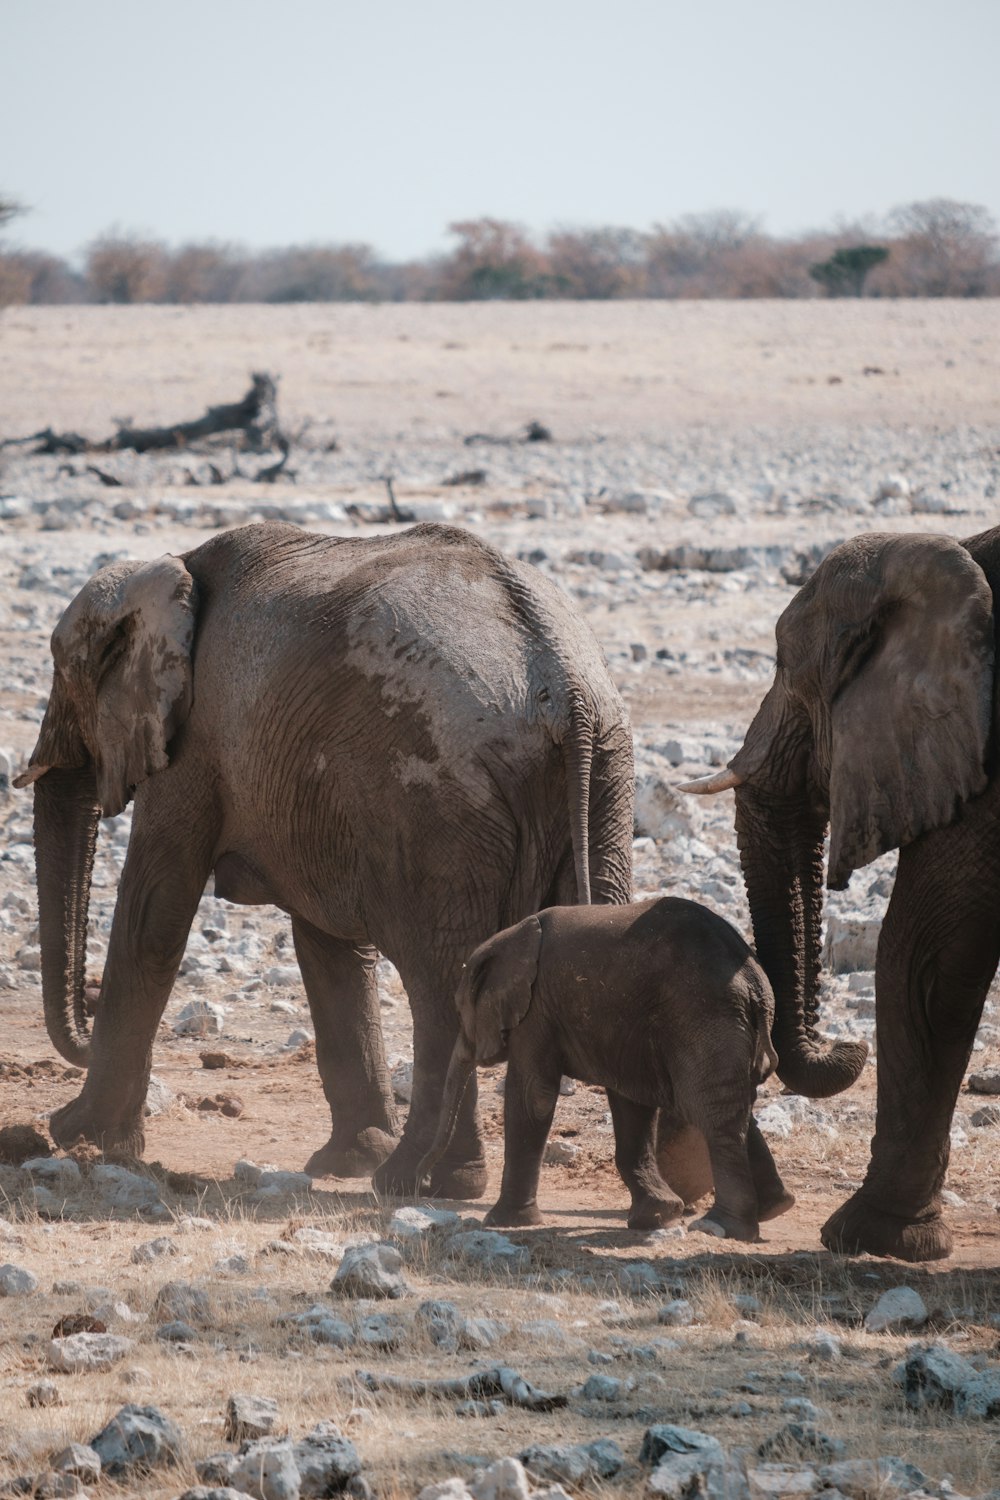 a group of elephants walk in a field